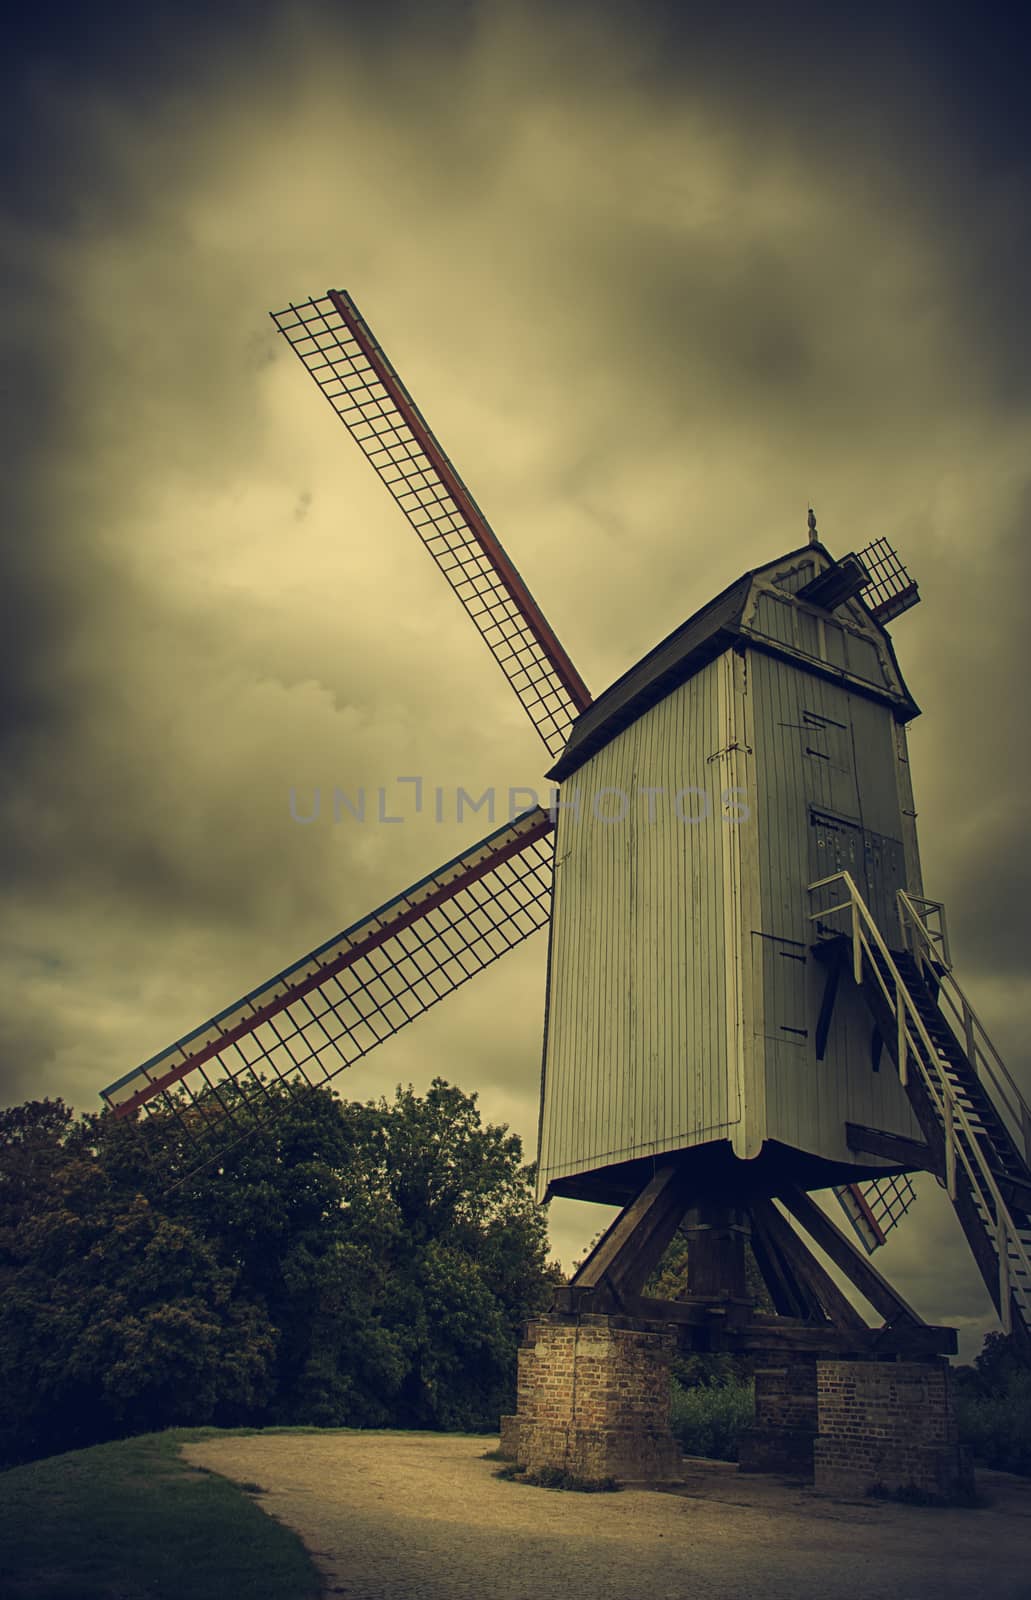 Old mill in Bruges by esebene